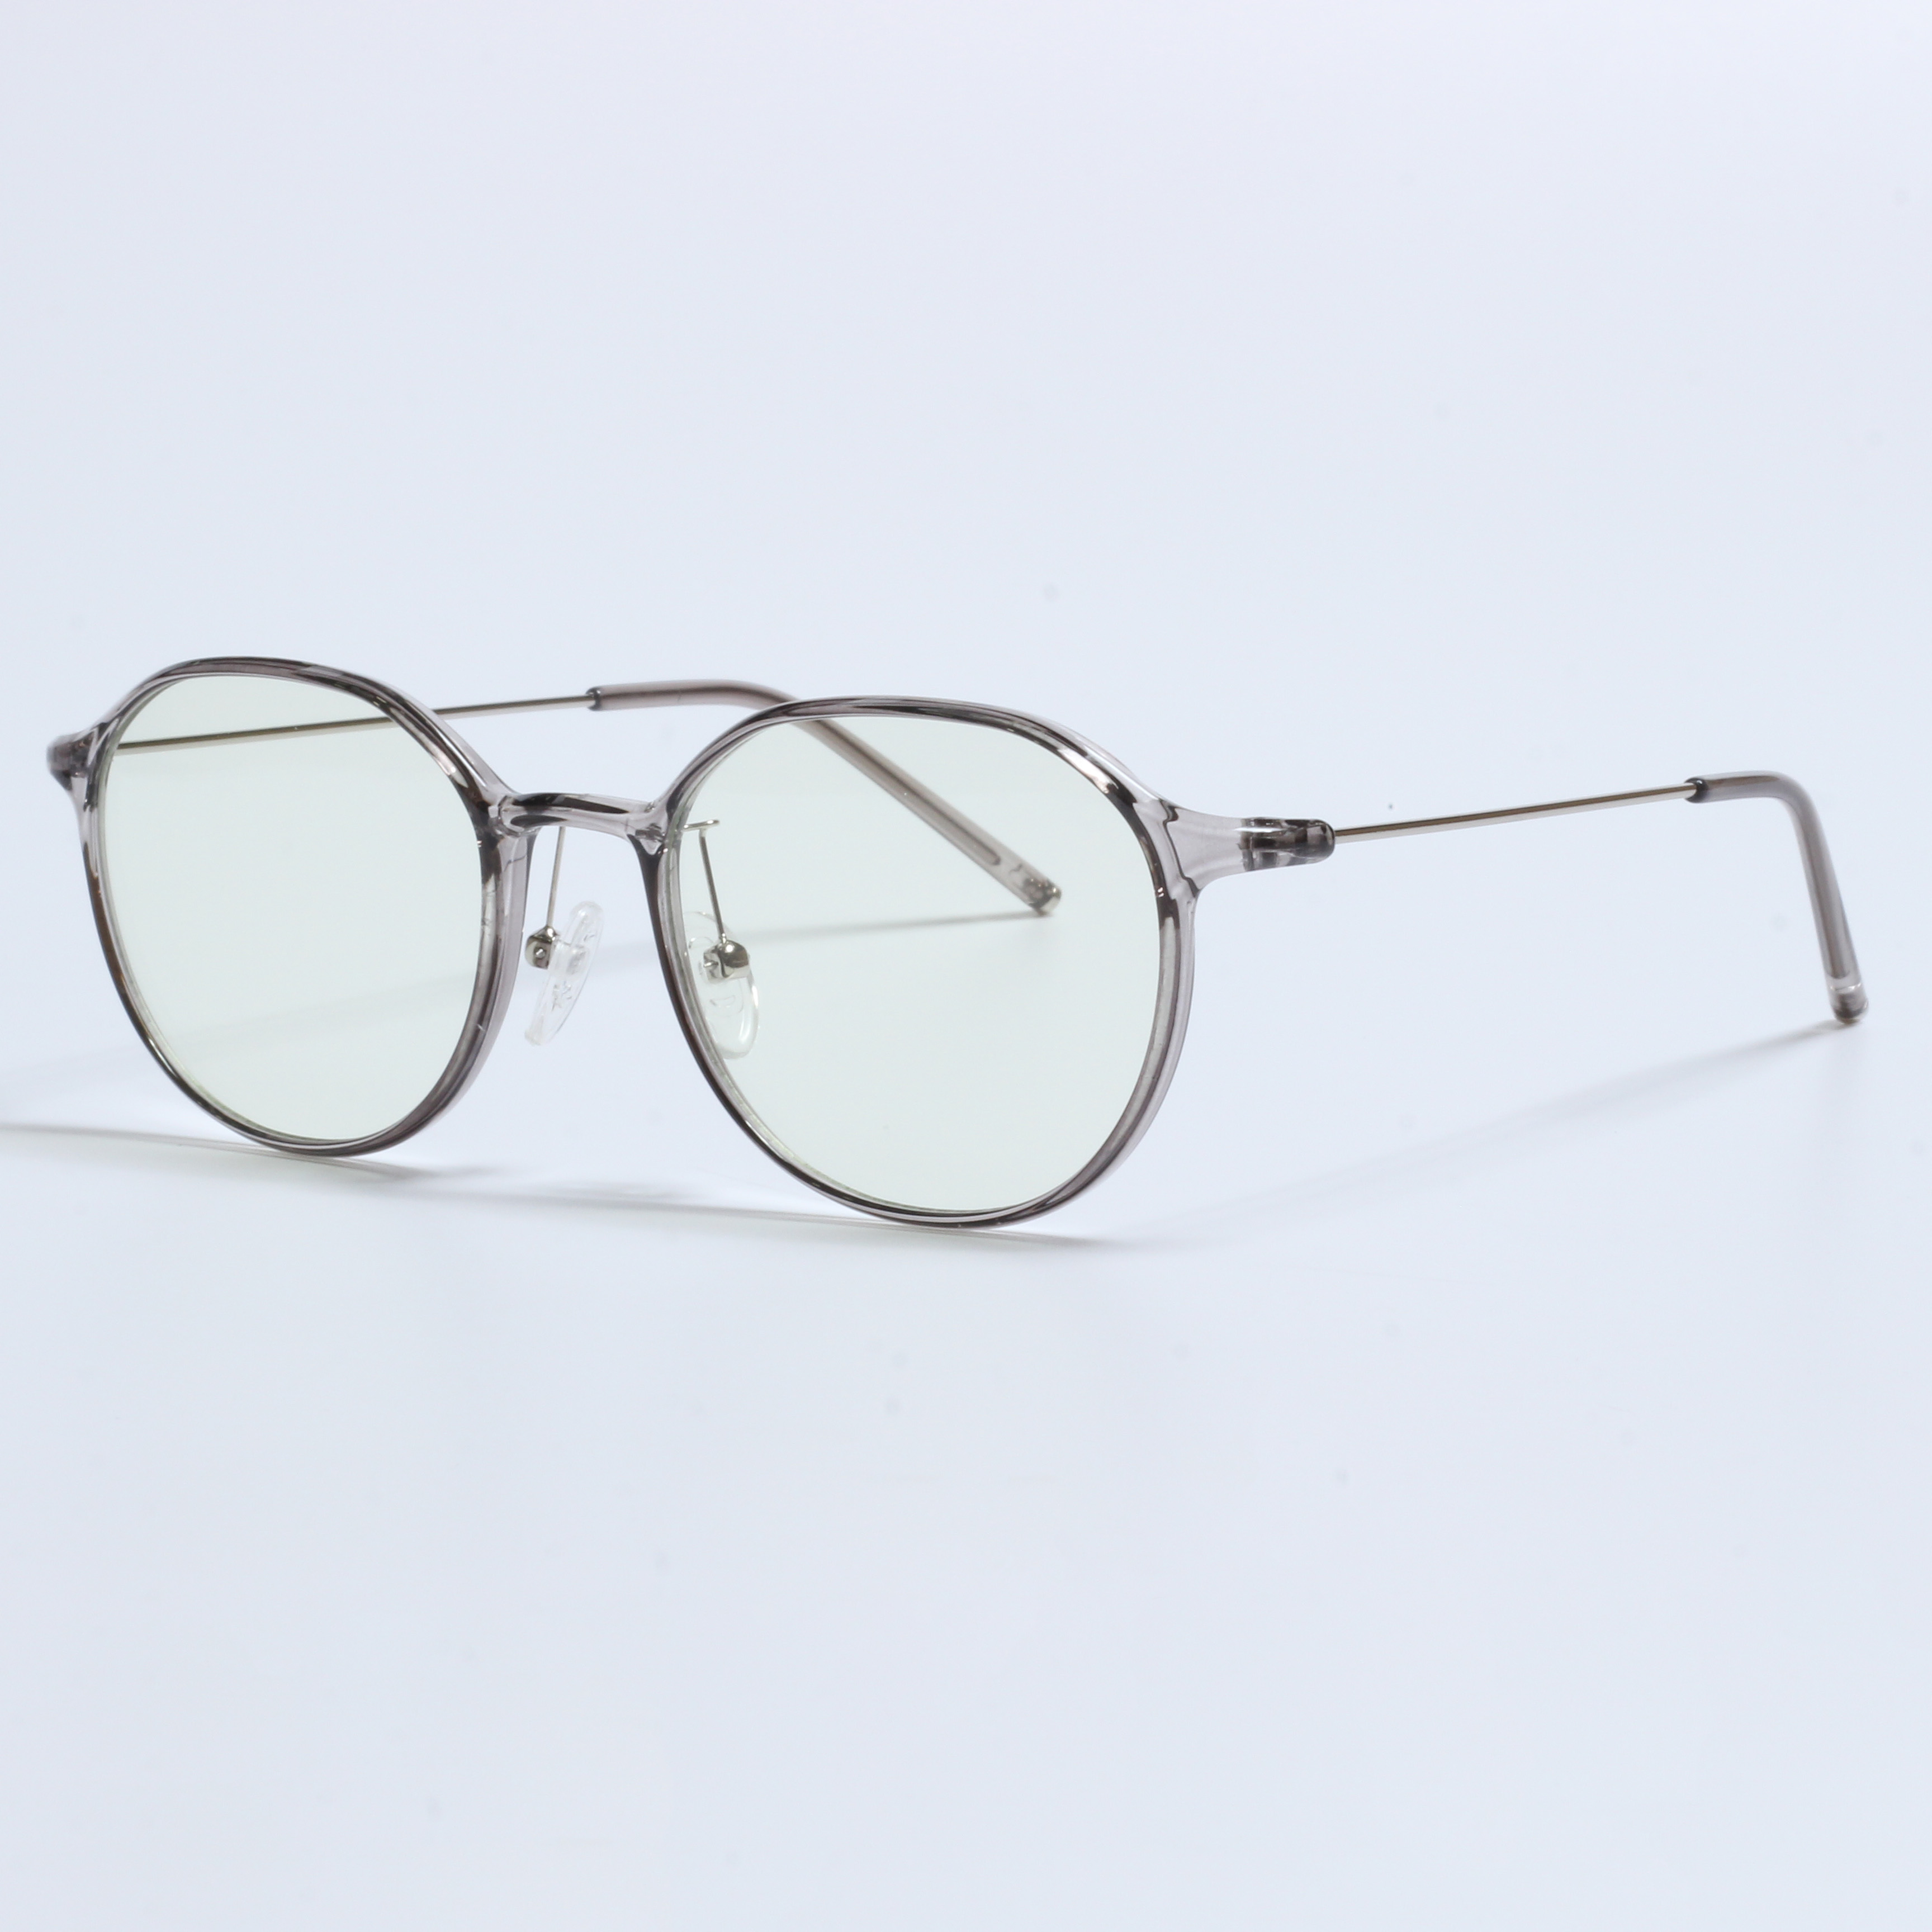 I-Vintage Thick Gafas Opticas De Hombres Transparent TR90 Frames (5)